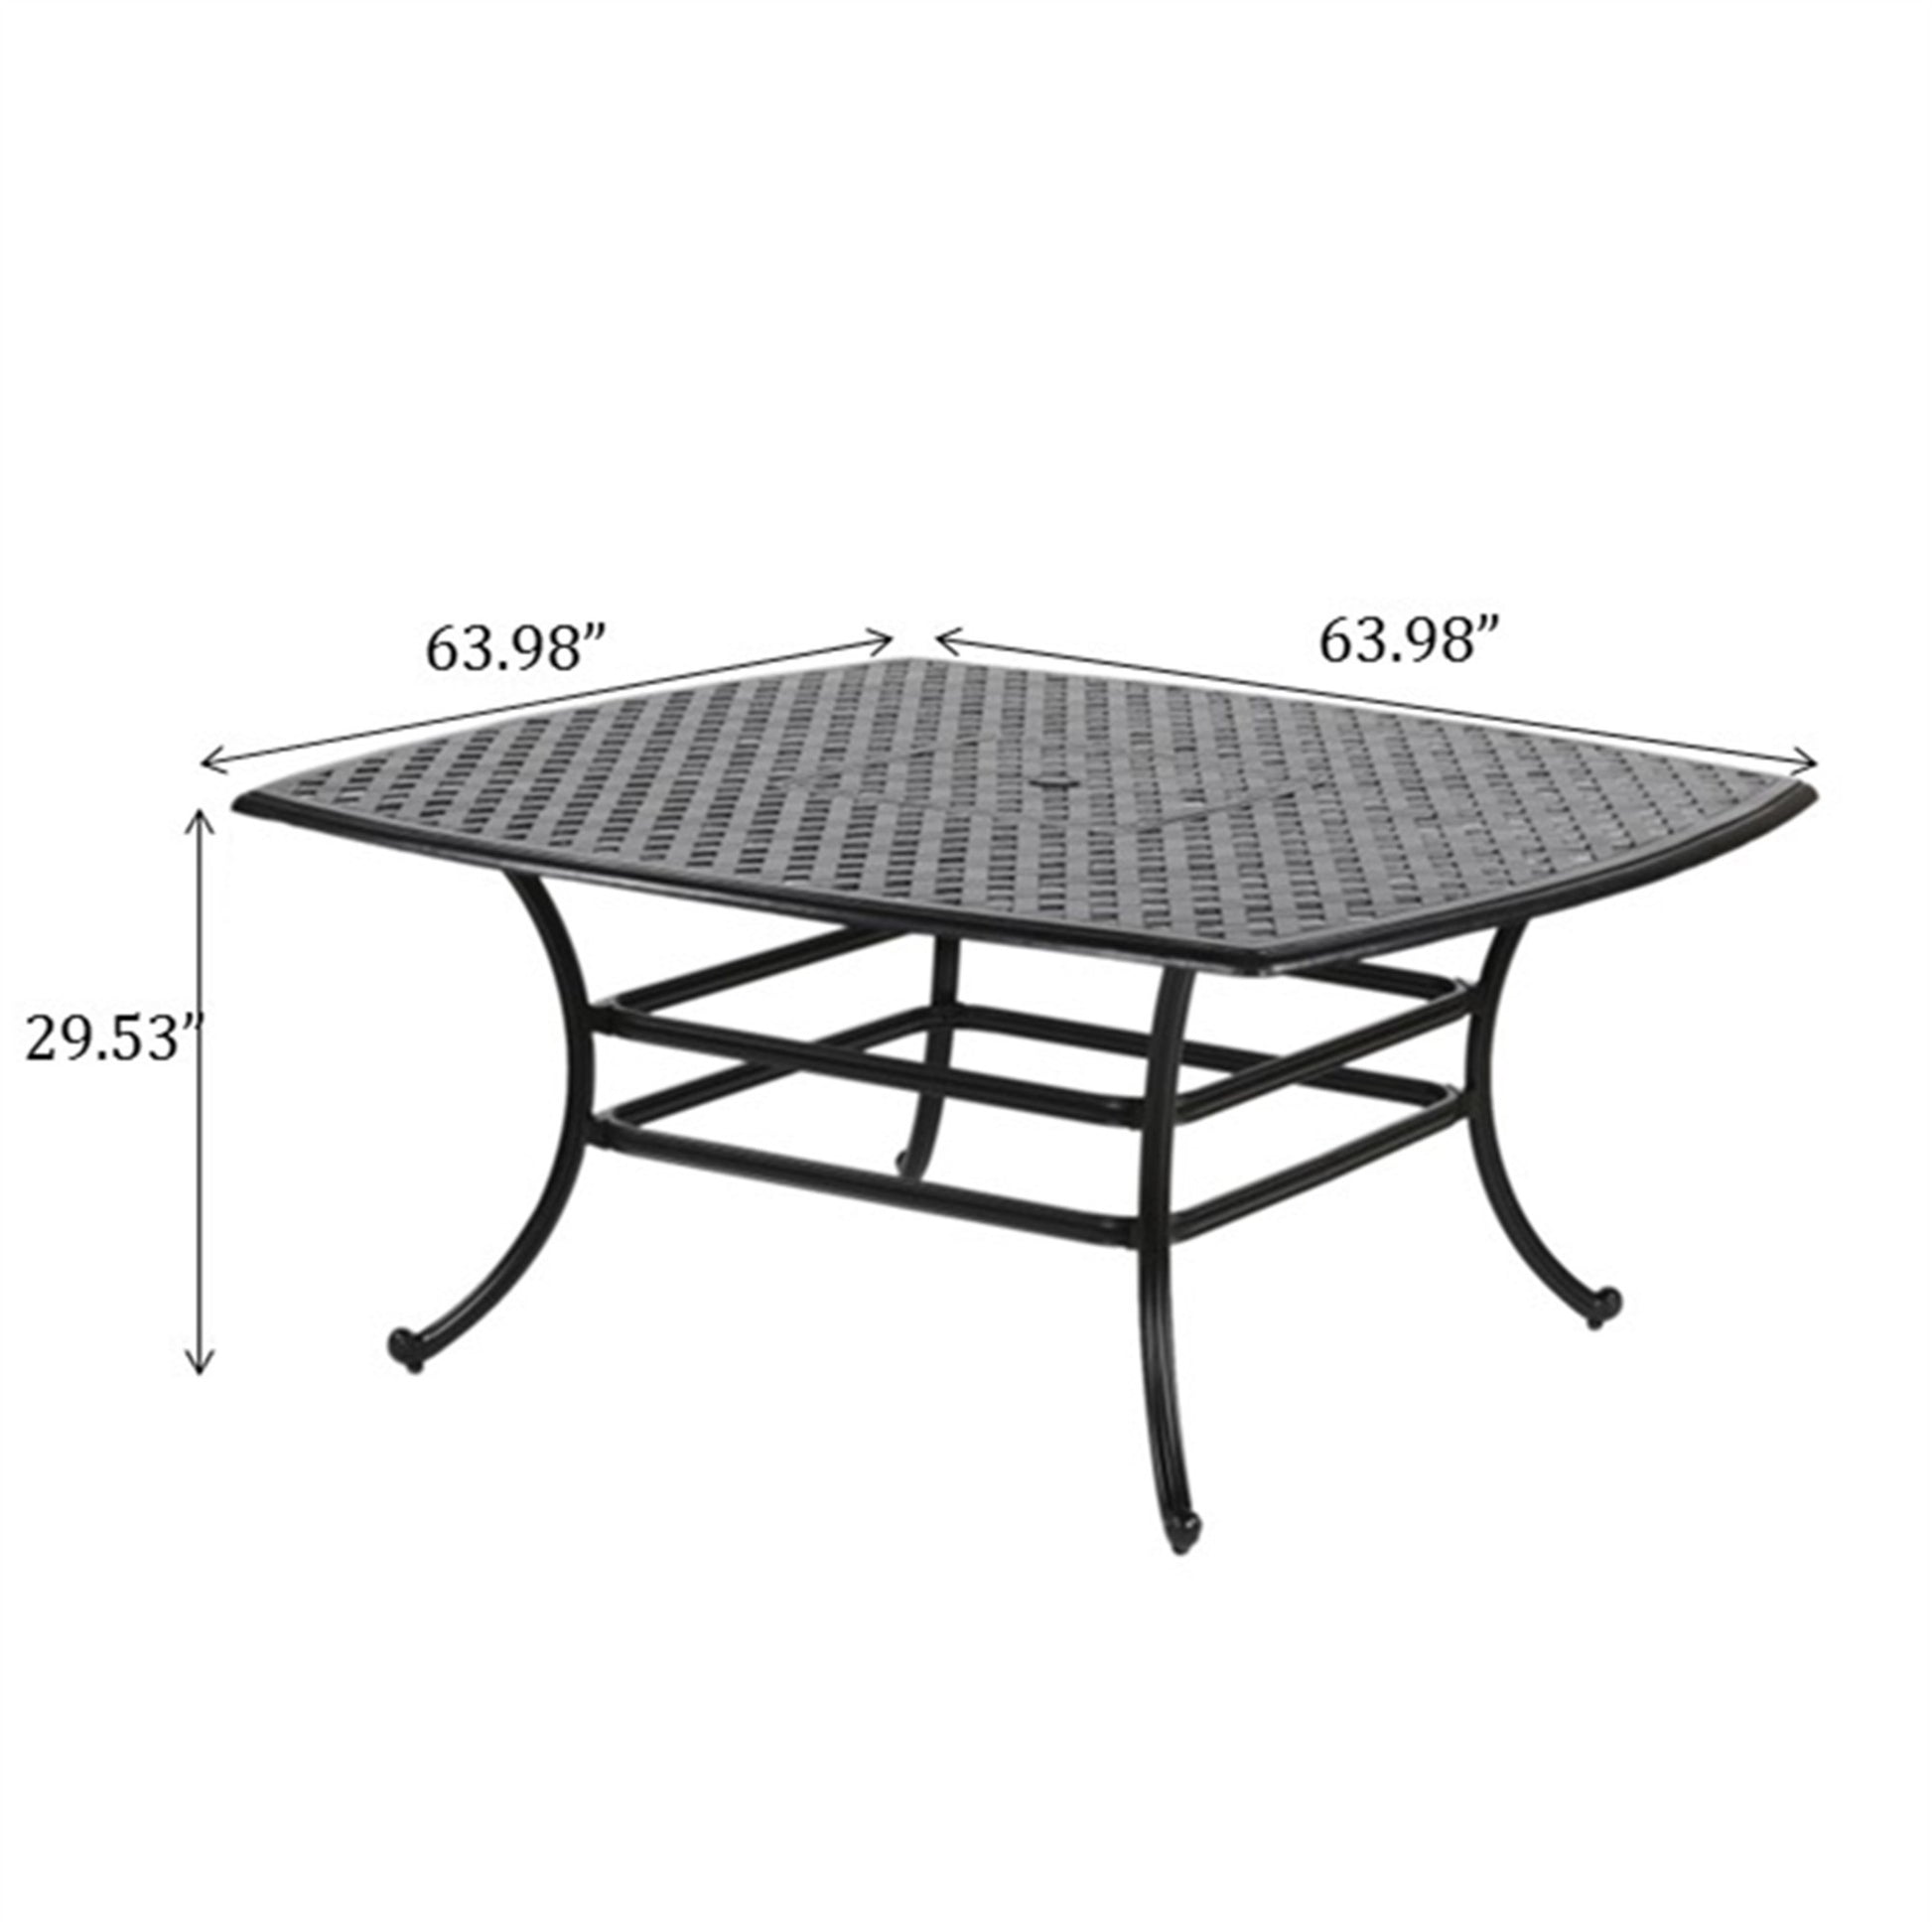 64" Square Dining Table, Dark Lava Bronze antique bronze-aluminum